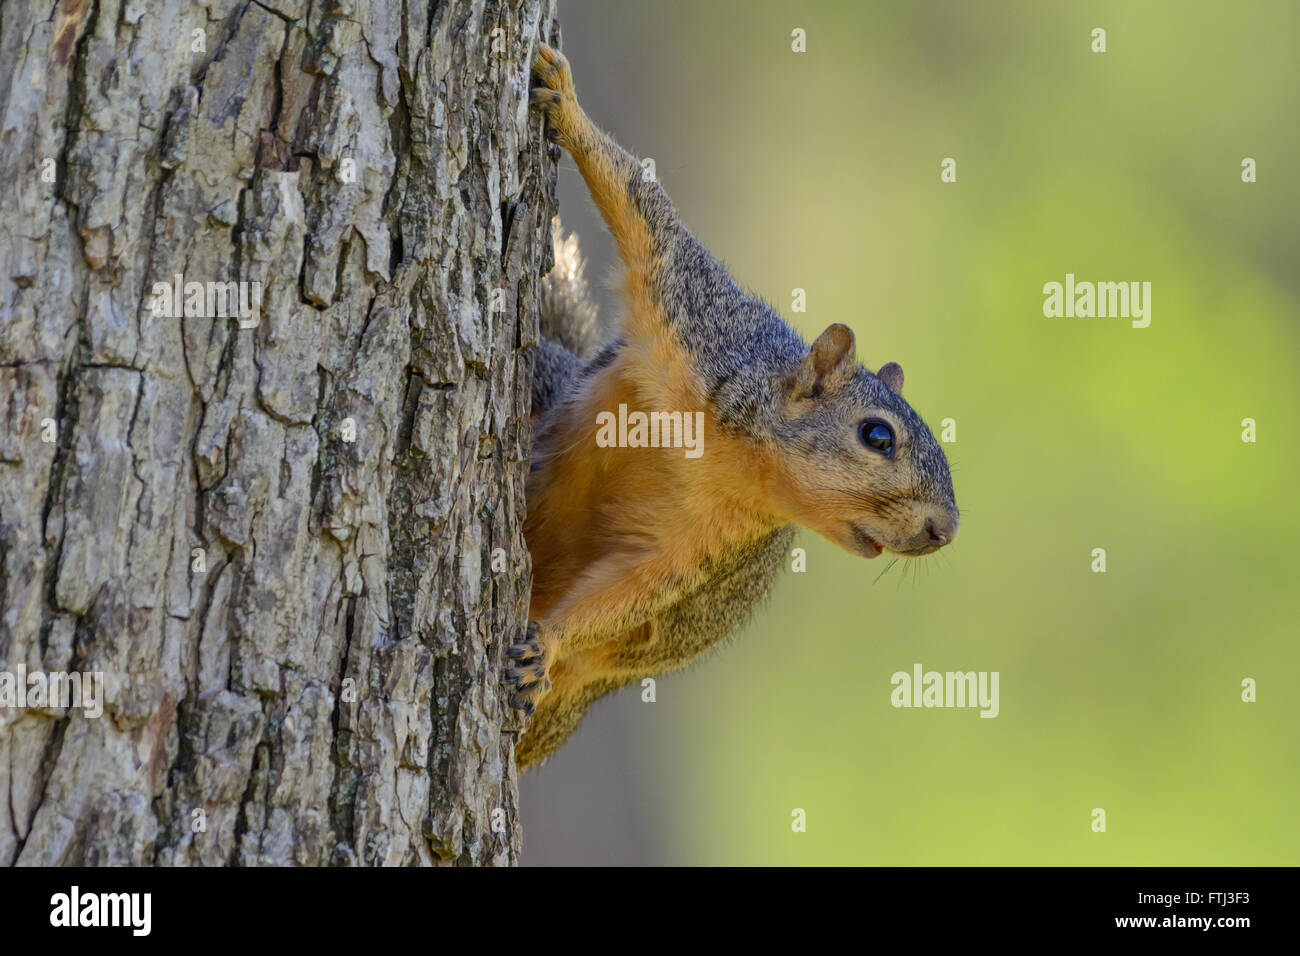 Fuchs, Eichhörnchen auf Seite des Baumes, die auf der Suche nach rechts des Rahmens. Grün, unscharfen Hintergrund Tiefenschärfe. Landschaft Stockfoto